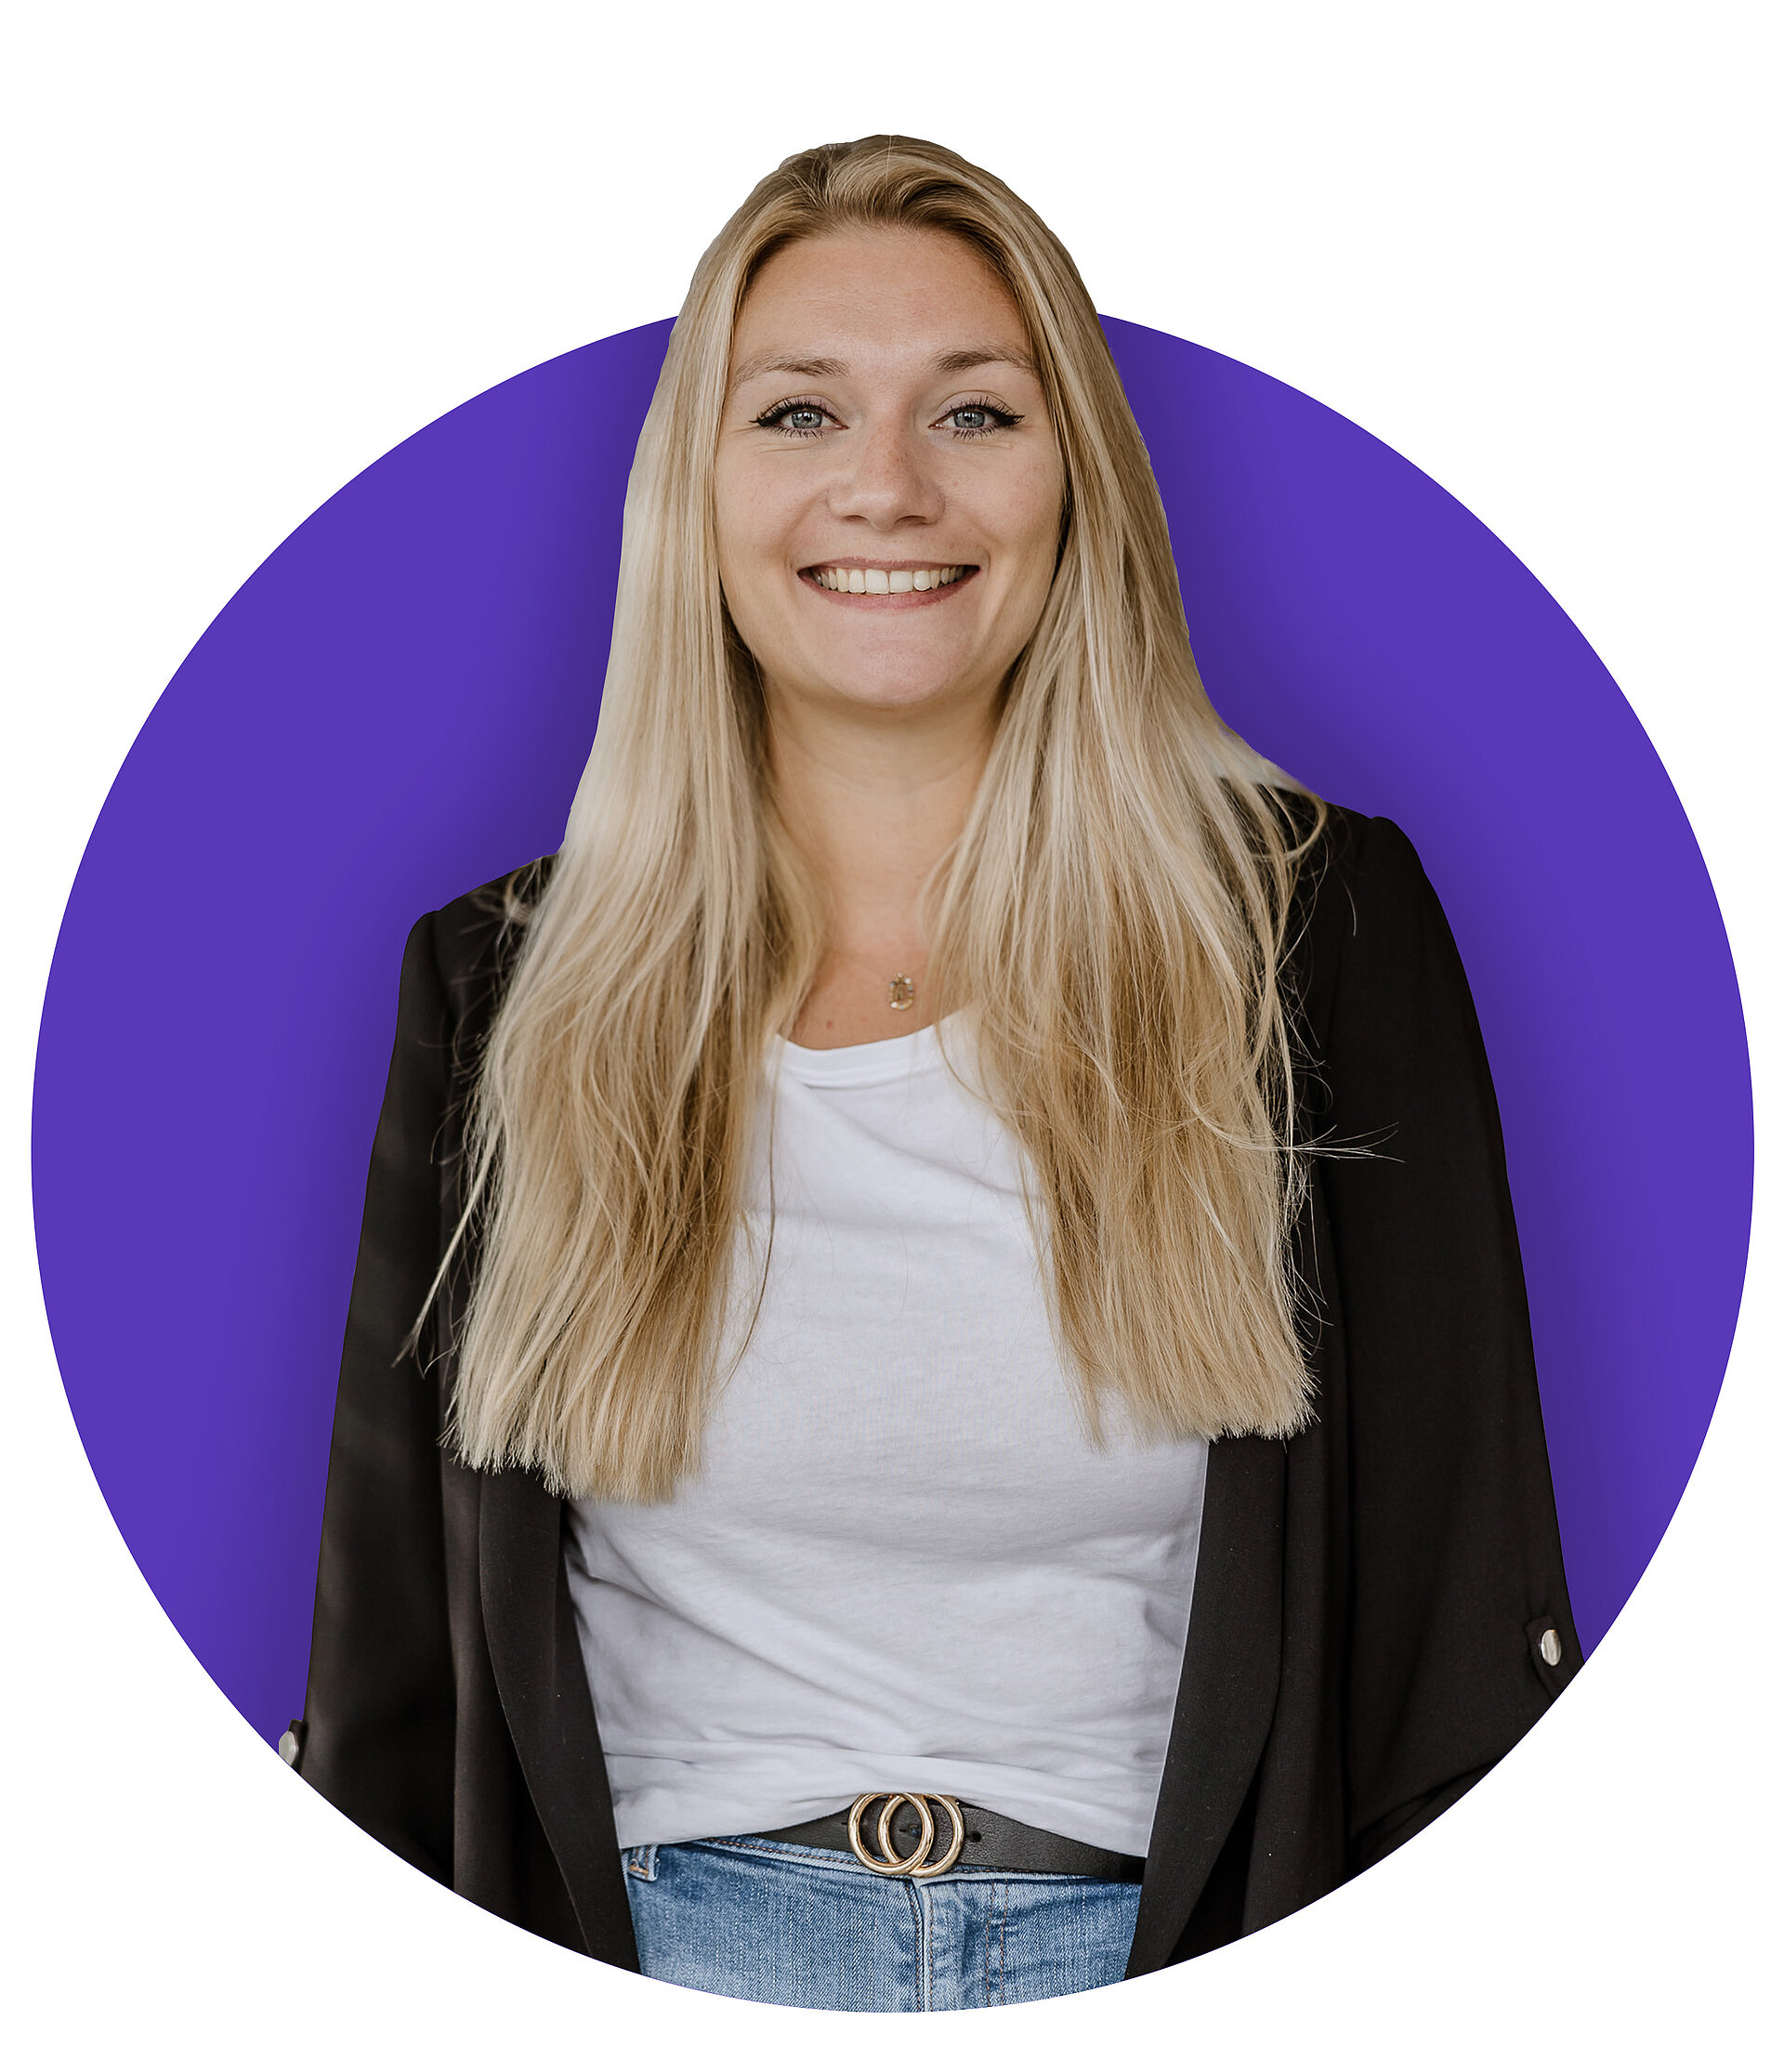 Digital Business Consultant Nadine Brües lacht vor lila Hintergrund